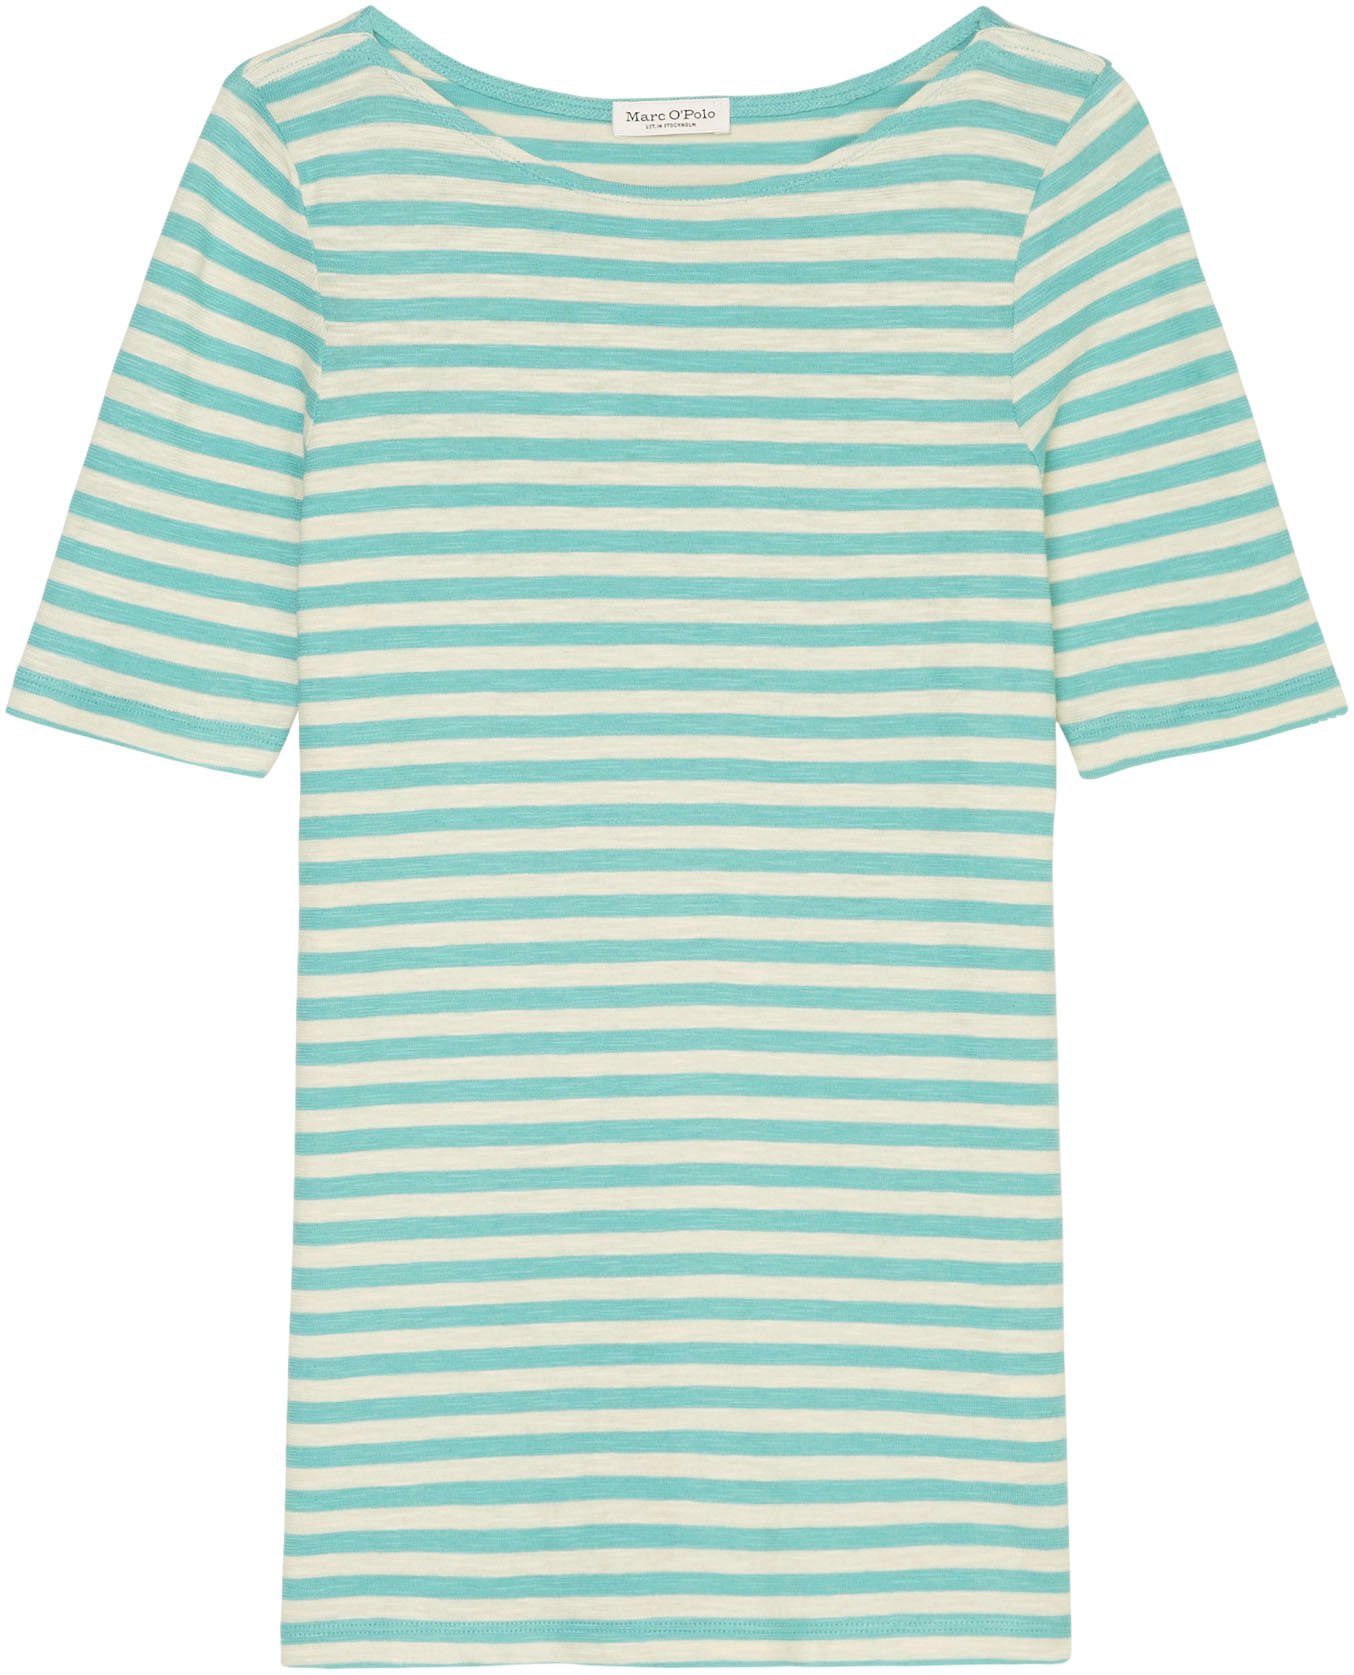 O'Polo blue T-Shirt multi/sea Marc